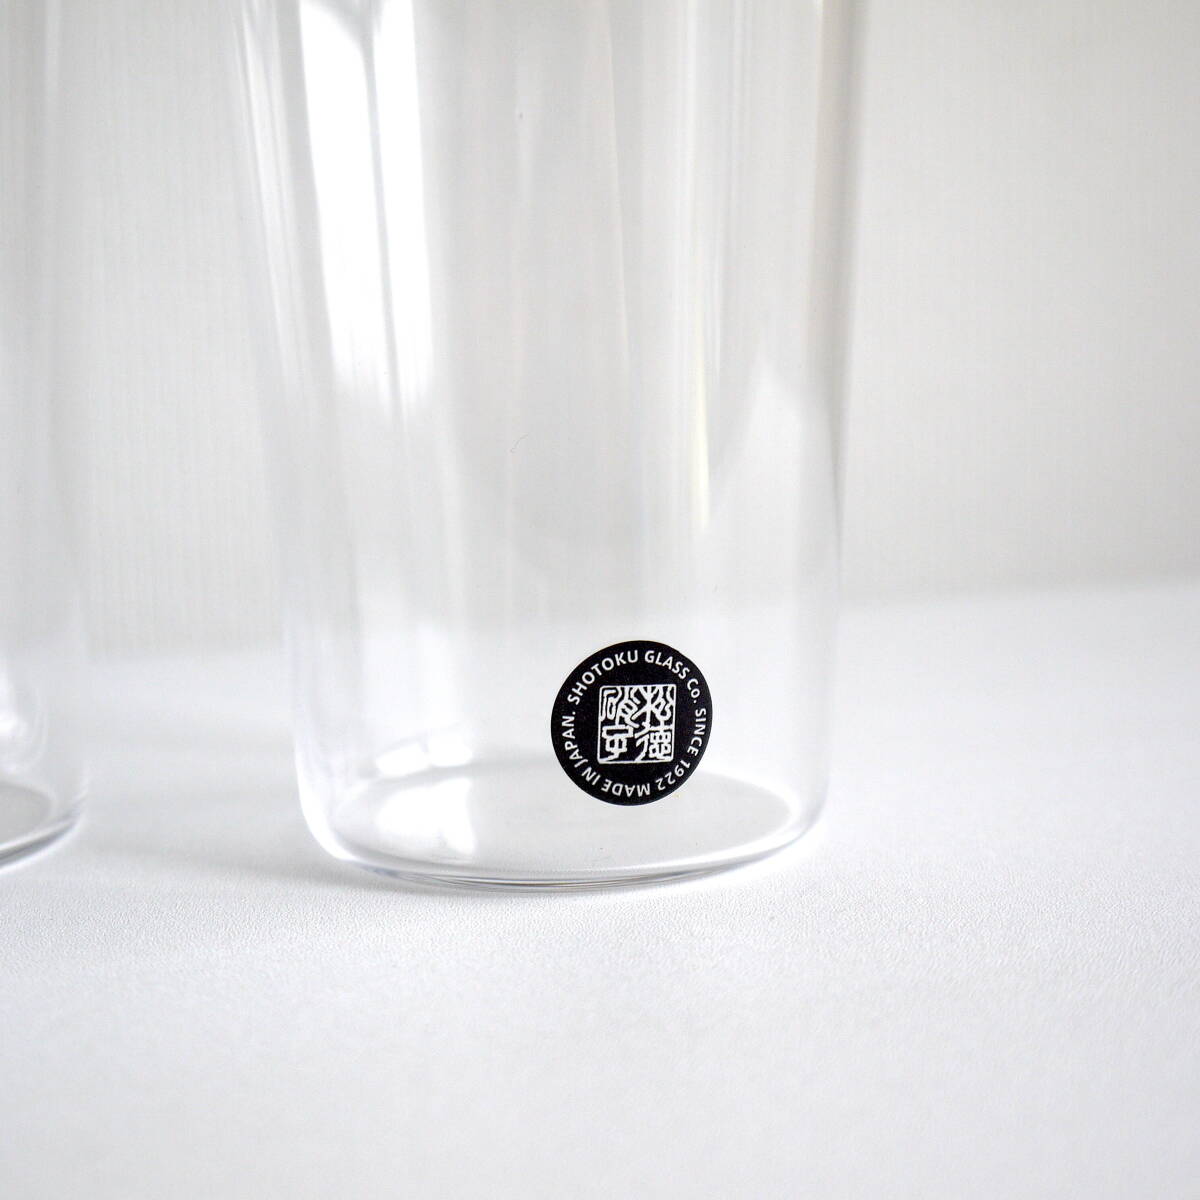 松徳硝子 うすはりタンブラー ビールグラス「厚さ0.9mmと究極の極薄グラス」ペア 2個セット〈 375ml 〉日本製 新品・自宅保管品の画像3